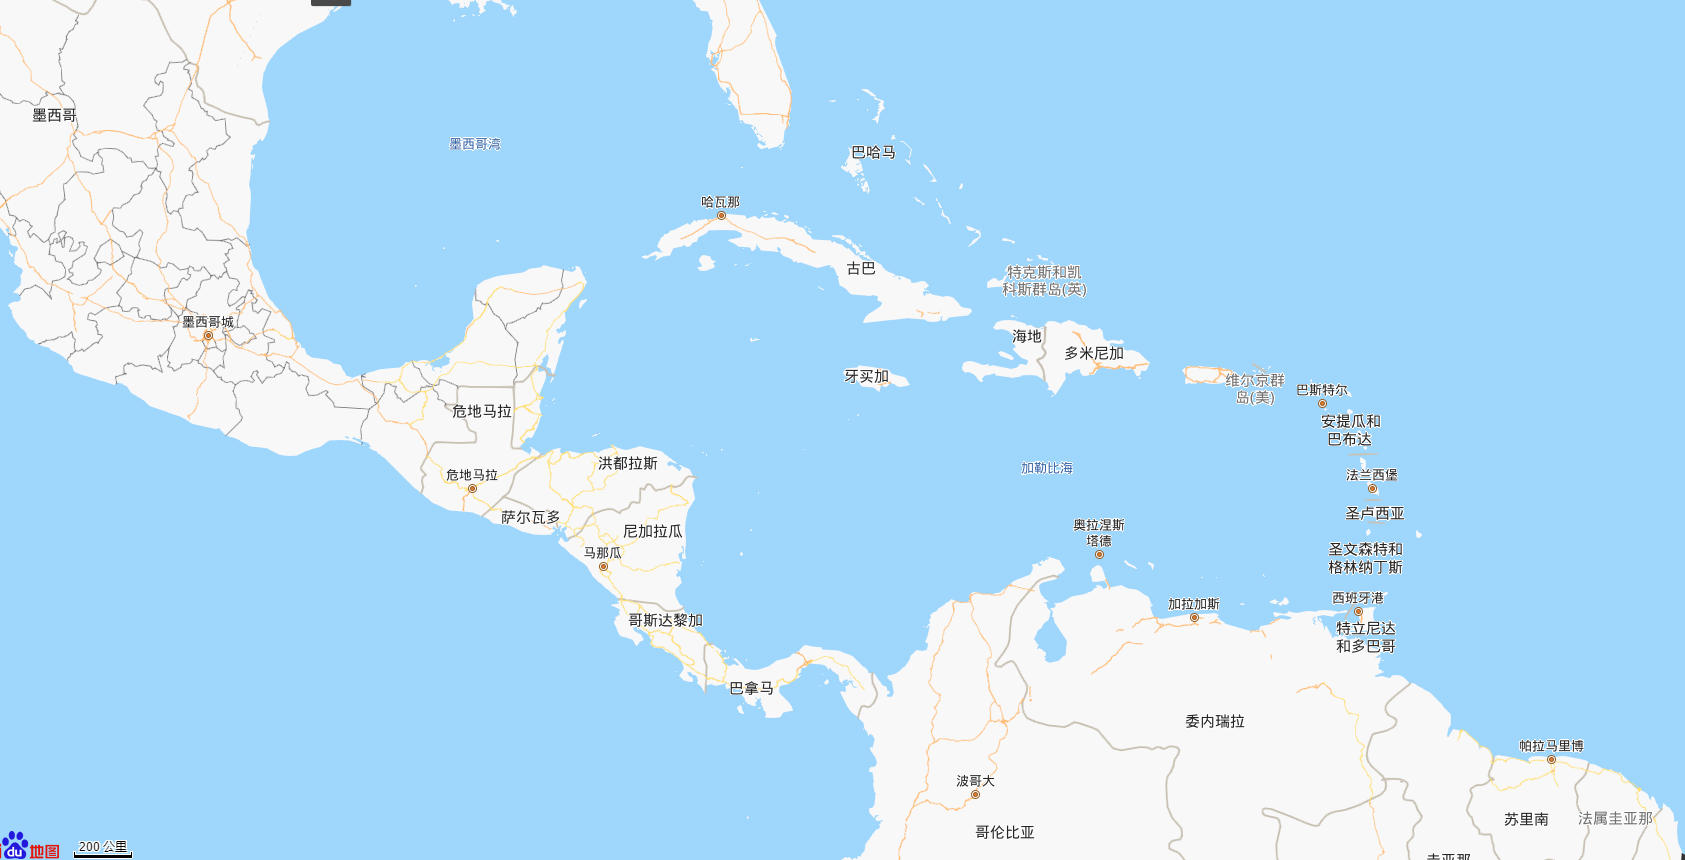 加勒比海:簡介,歷史,地理環境,位置境域,地質,水文,氣候,資源,沿岸港口,旅遊,_中文百科全書